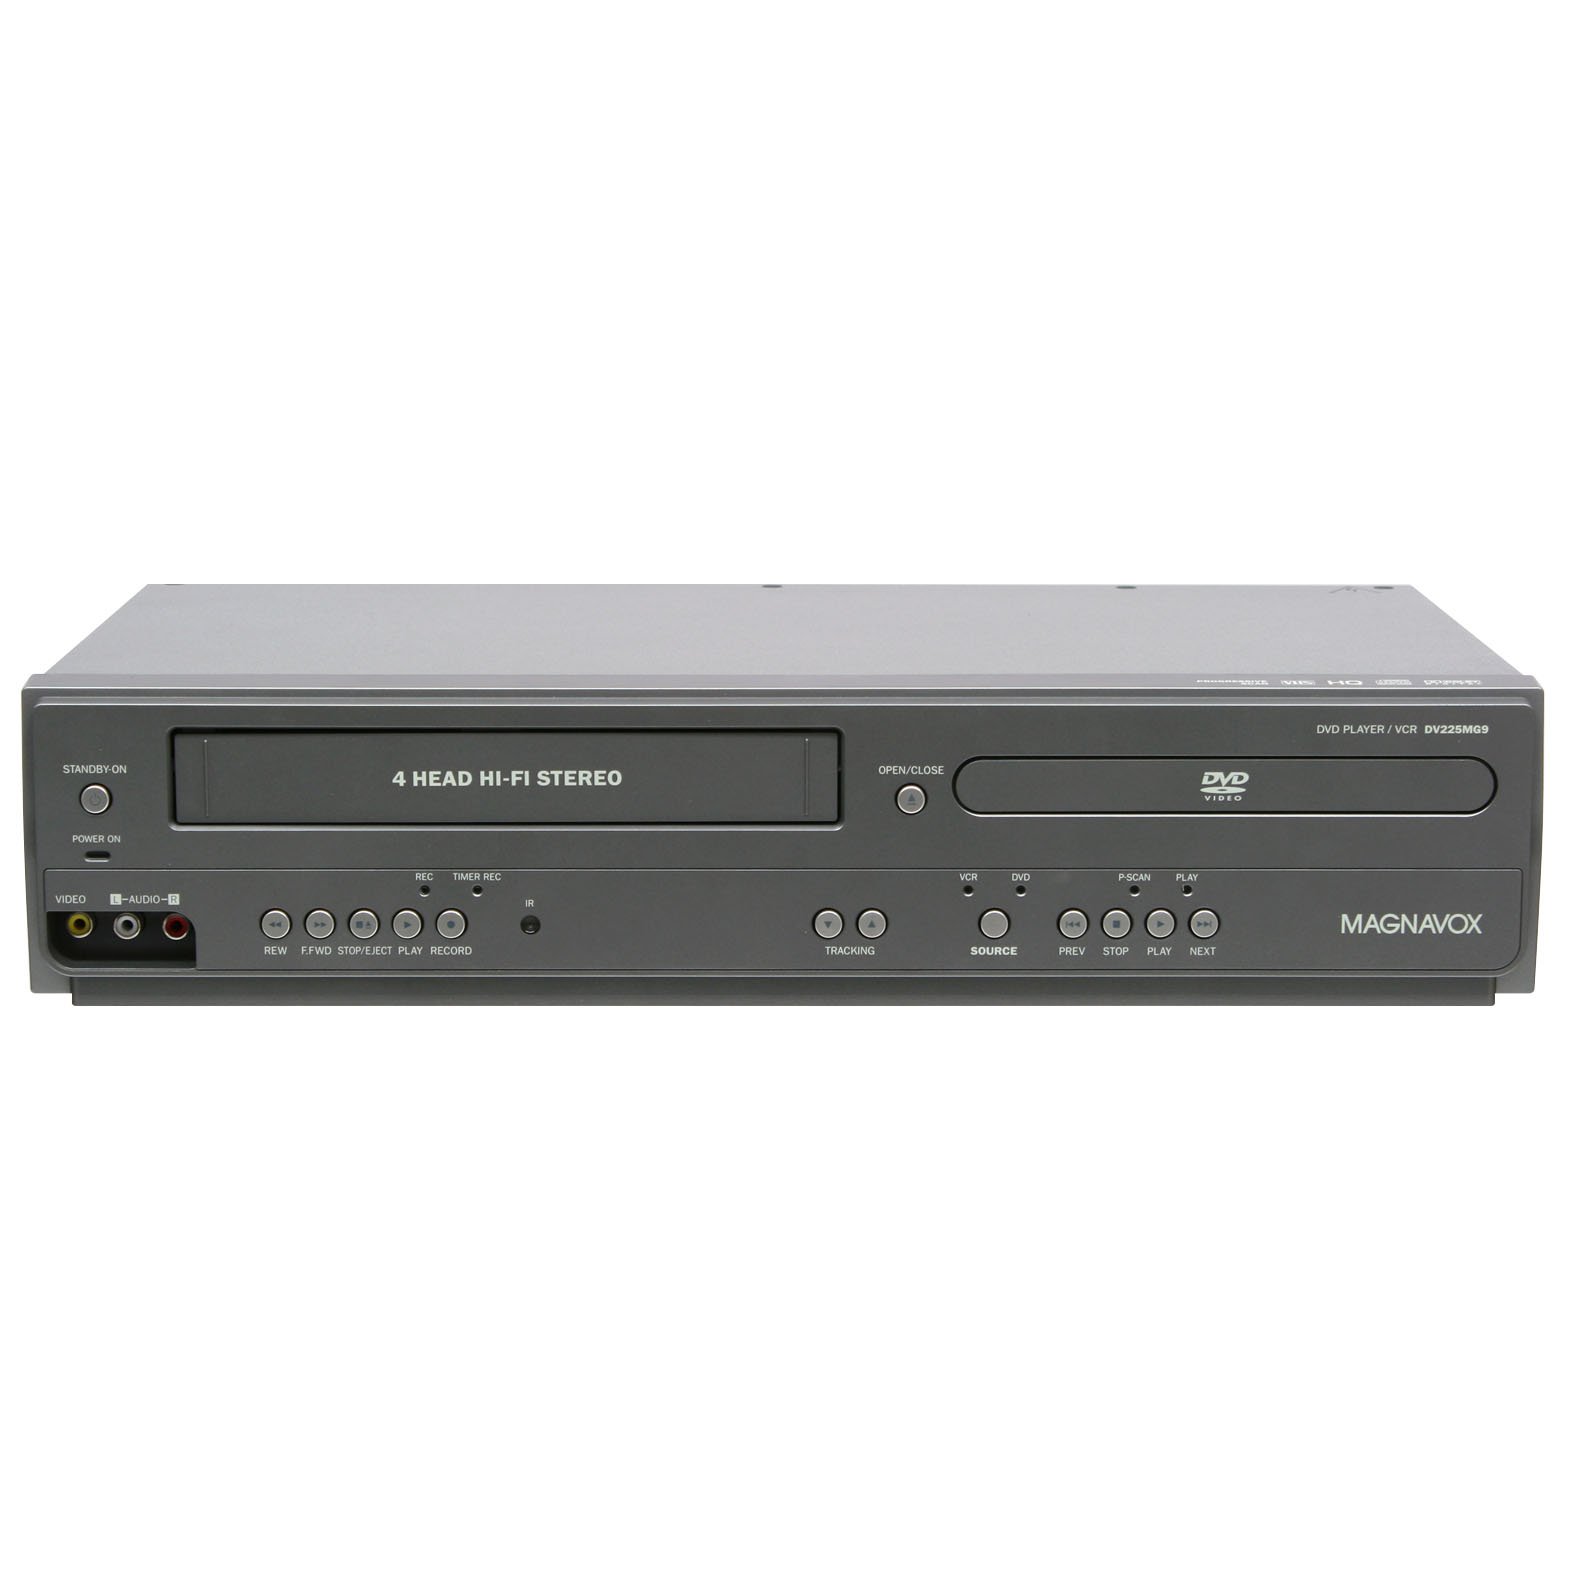 Magnavox DVD-плеер DV225MG9 и 4-головочный стереовидеомагнитофон Hi-Fi с линейной записью